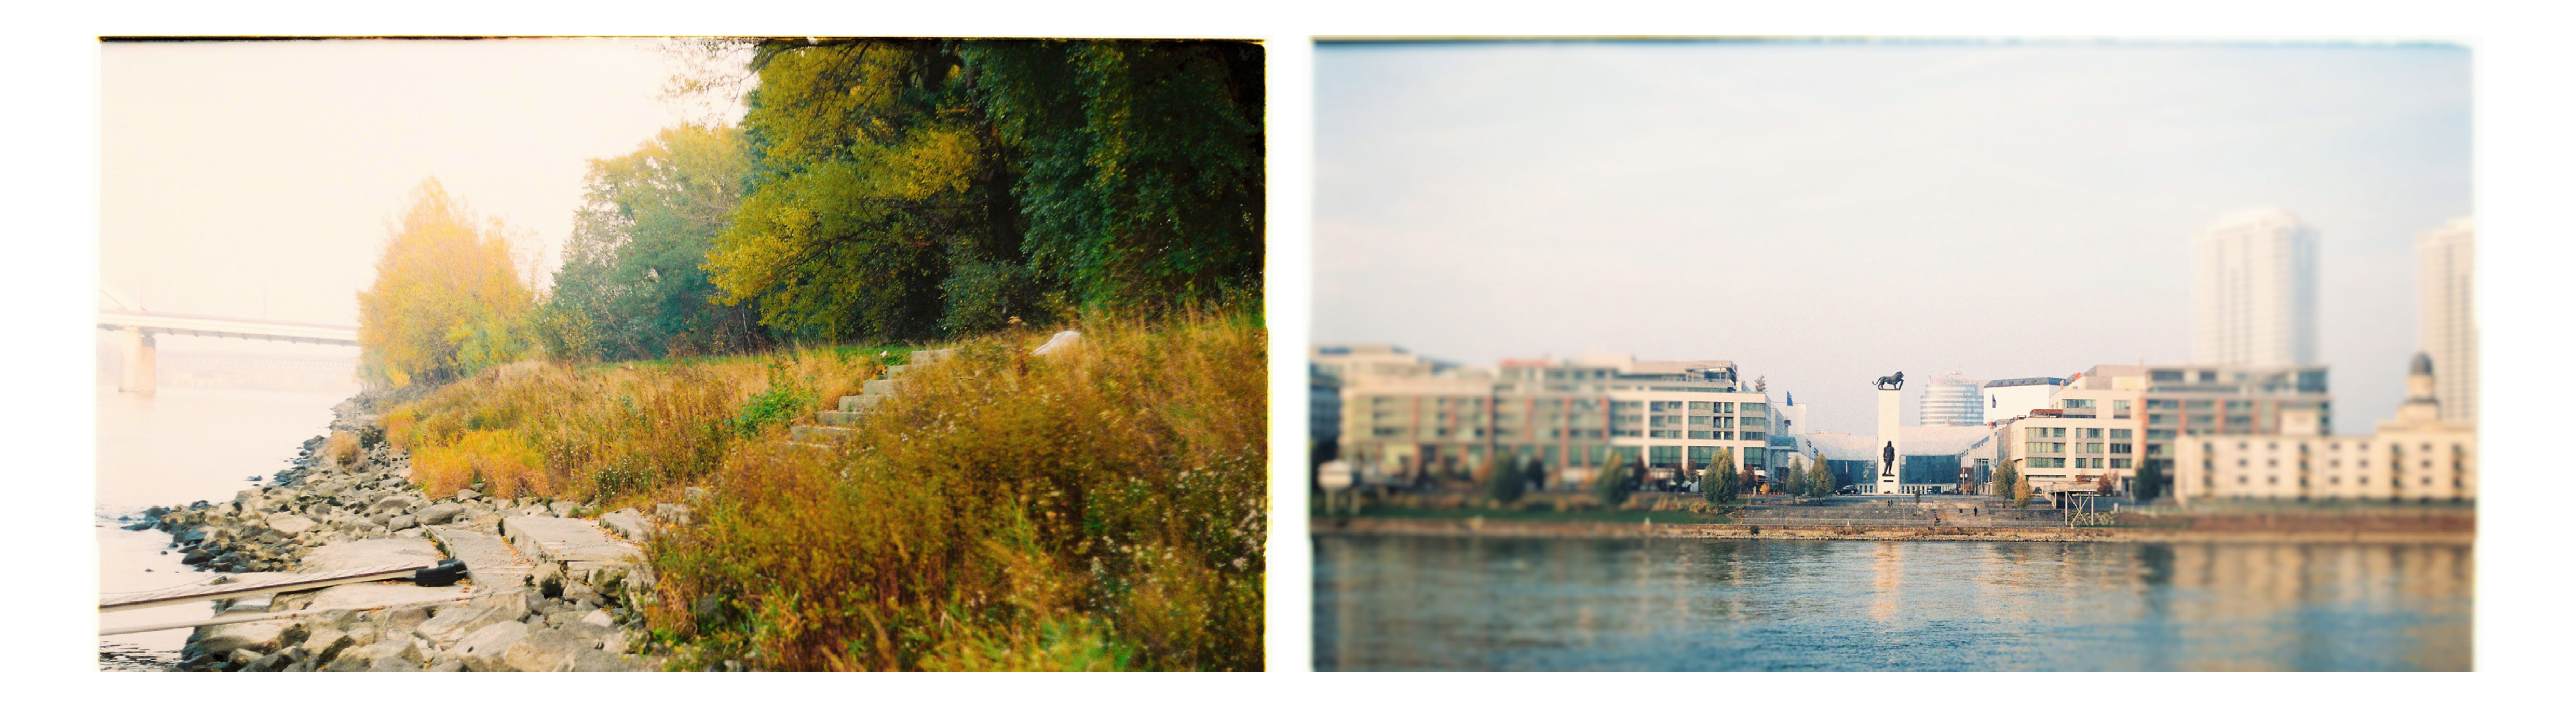 ČO: voda, dotyk s vodou, prístup k vode, využitie vody, centrum mesta. KDE: prírodné nábrežie, ostrovy, lido (vľavo).  ČO: výhľad, vizuálny kontakt, Dunaj - breh, príťažlivosť. KDE: námestie (vpravo)